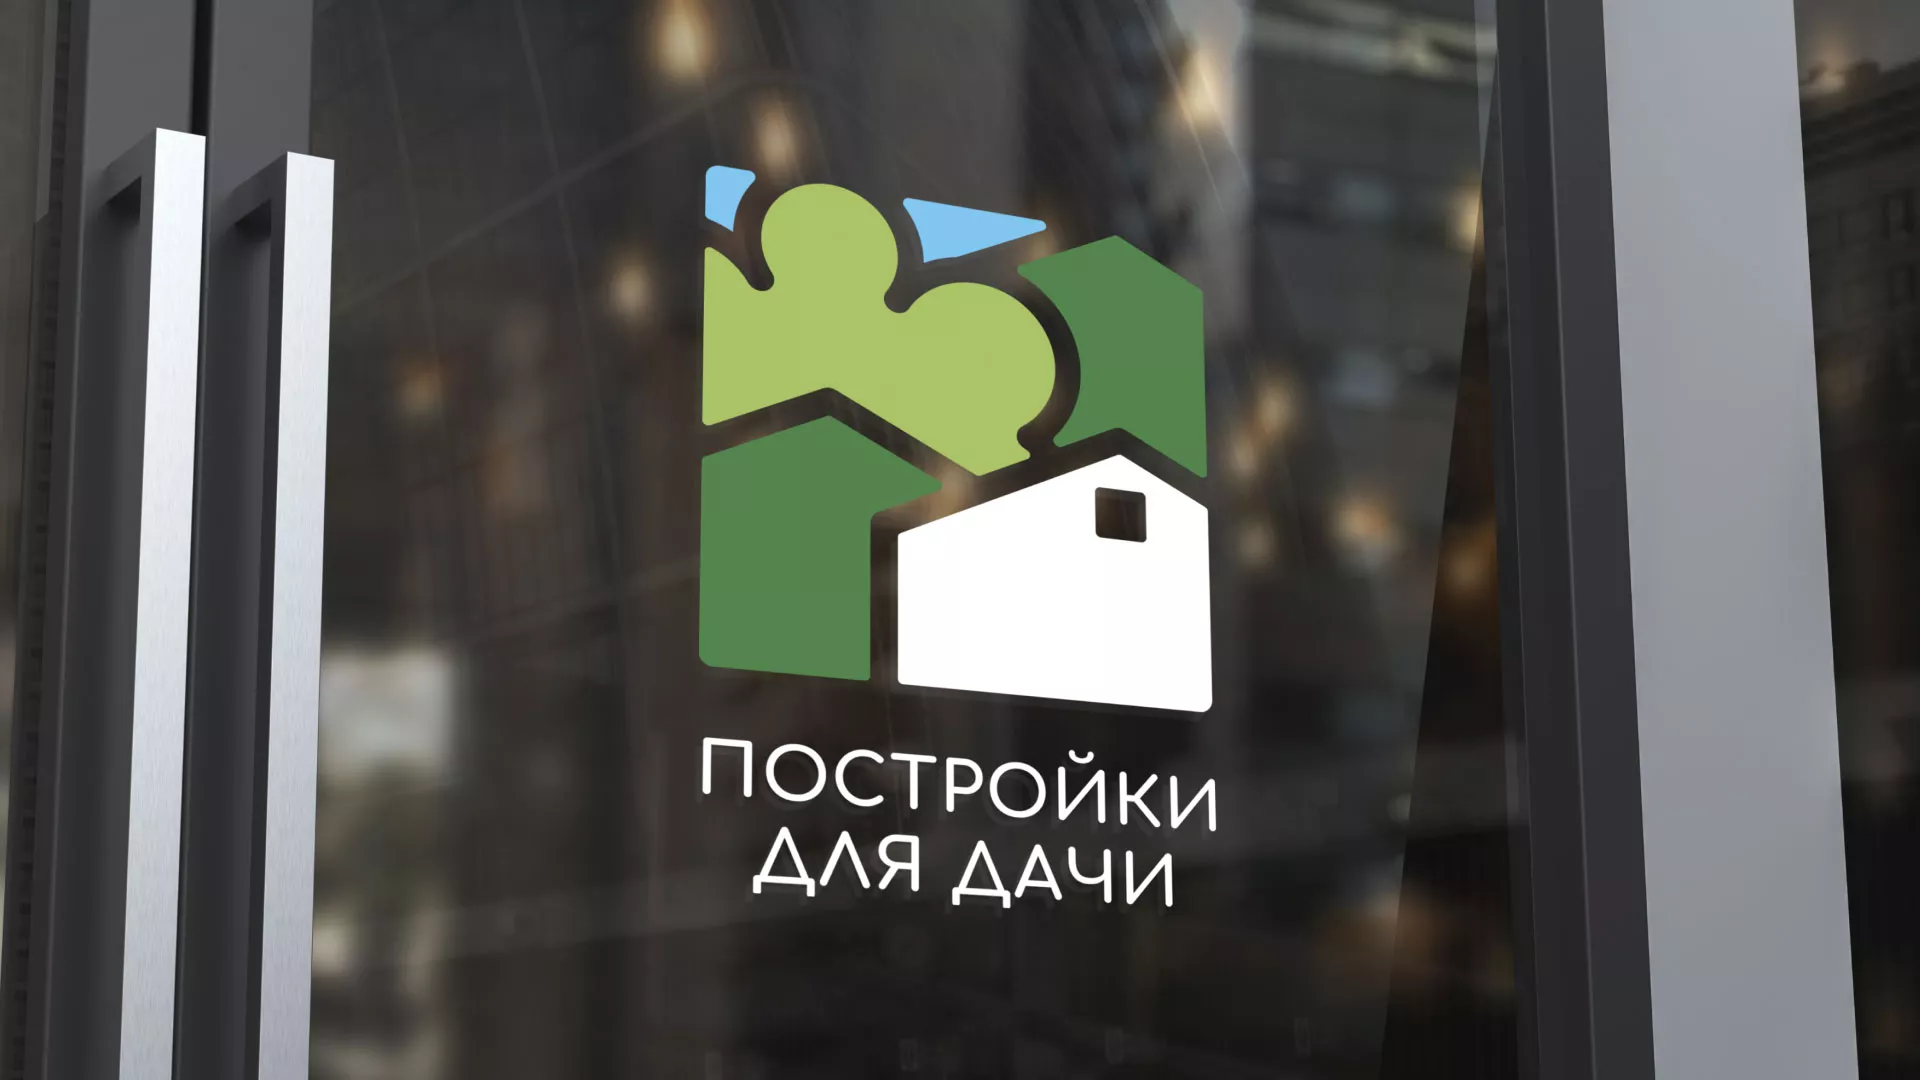 Разработка логотипа в Зиме для компании «Постройки для дачи»